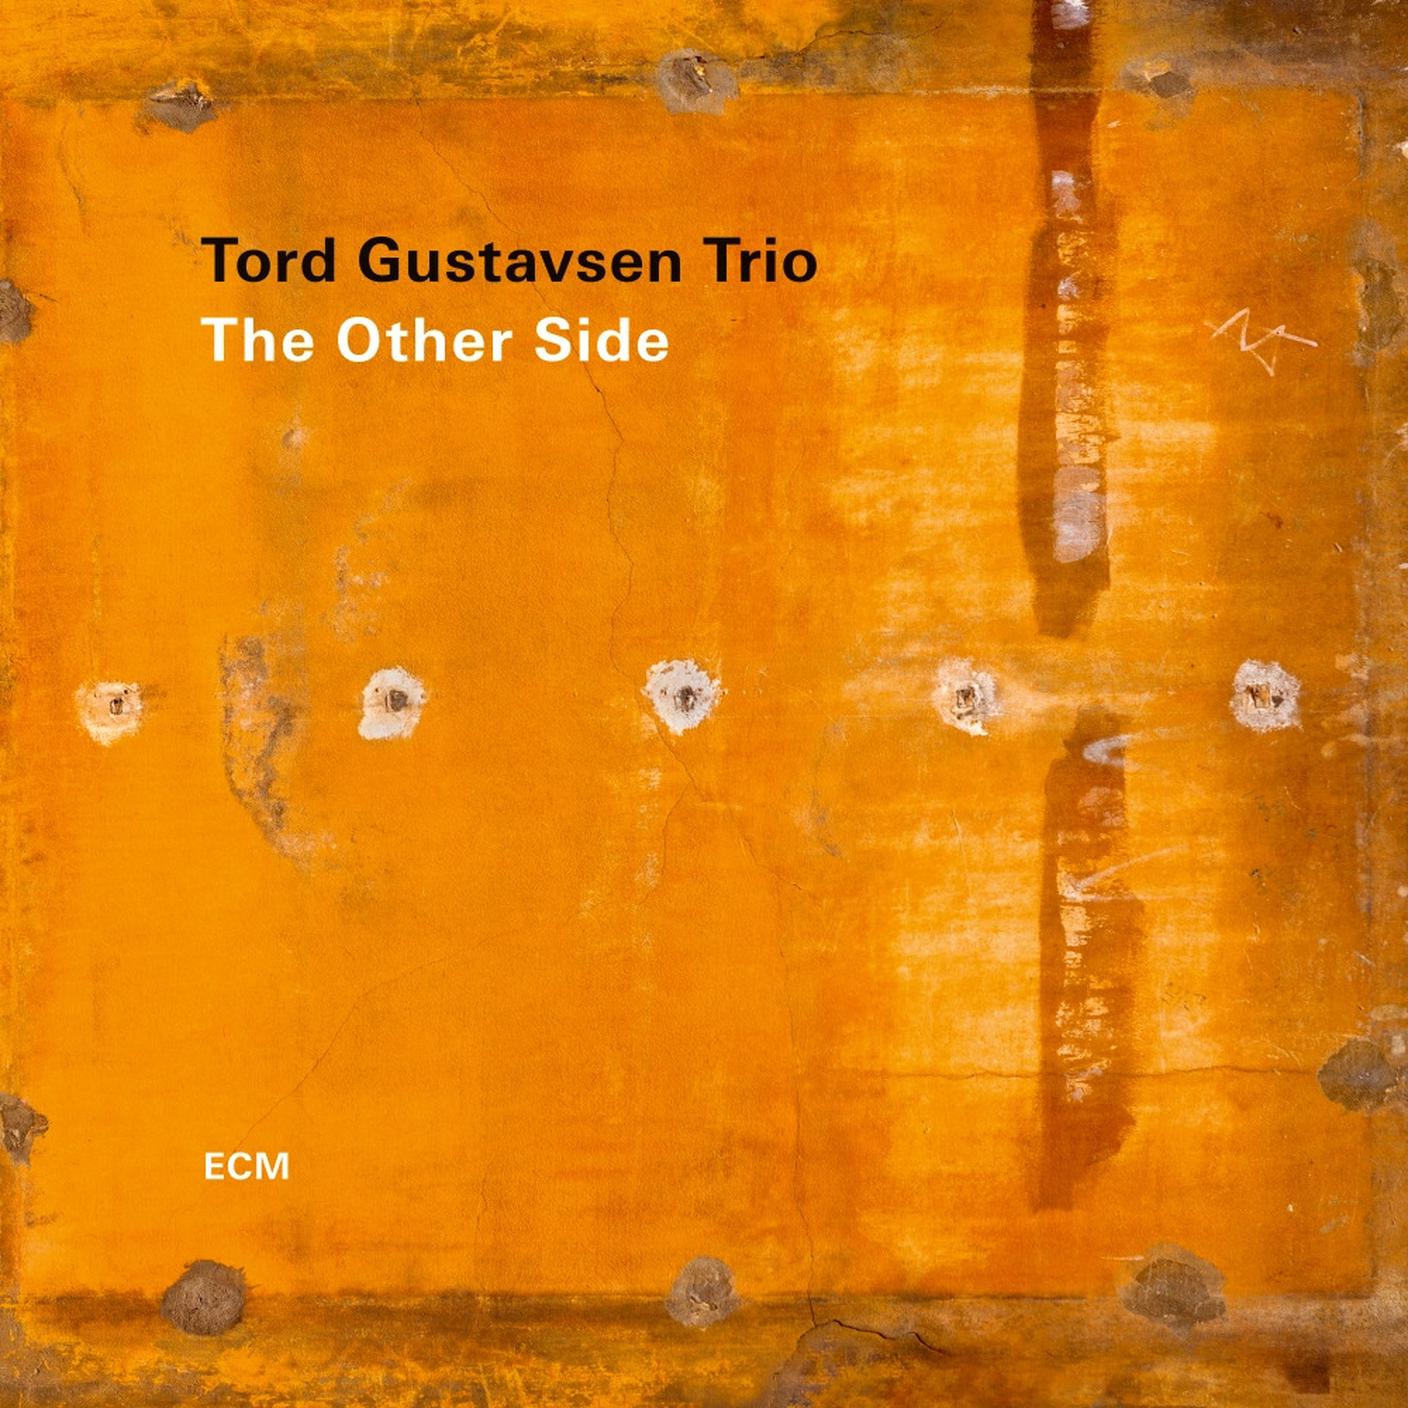 “The Other Side” di Tord Gustavsen Trio, ECM (dettaglio di copertina)